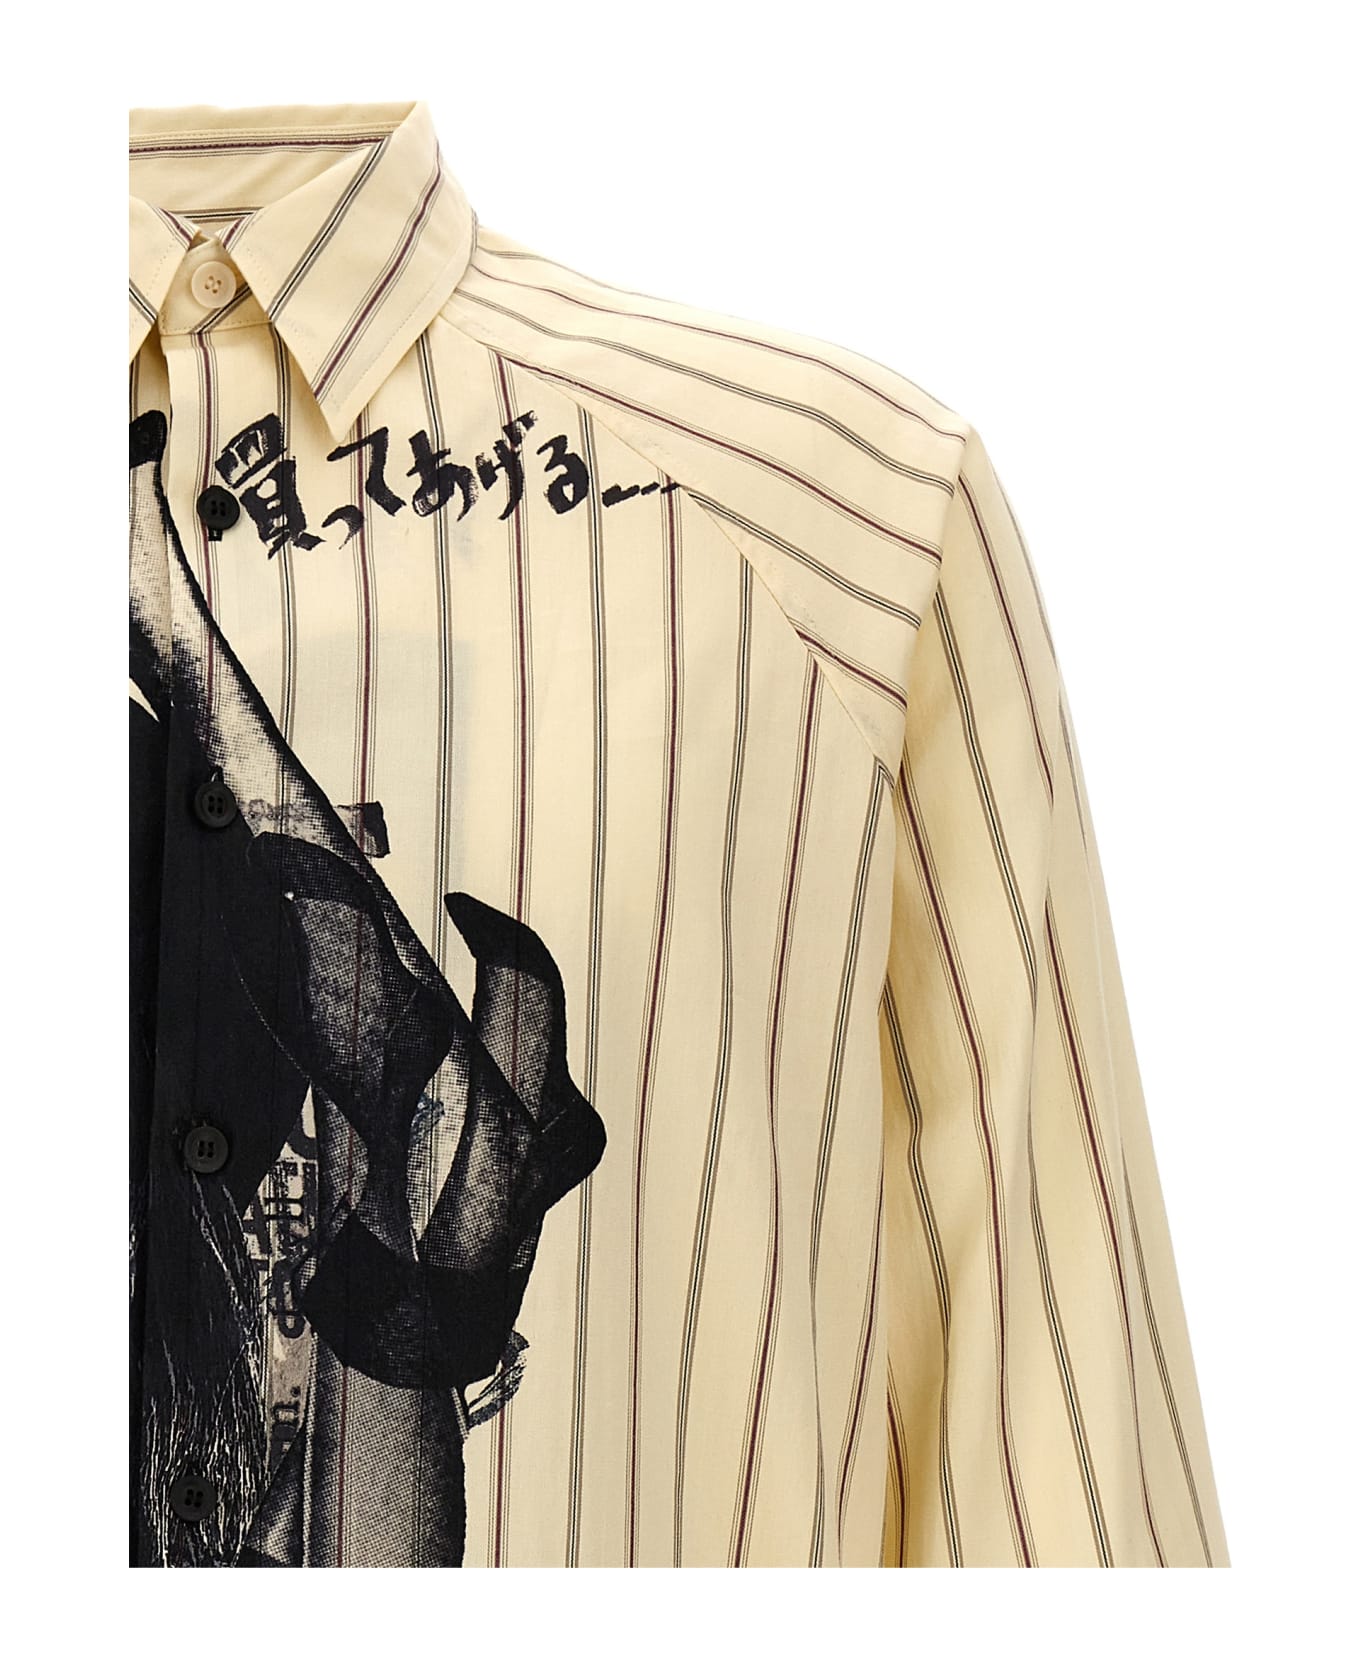 Yohji Yamamoto 'm-dadayohji' Shirt - Multicolor